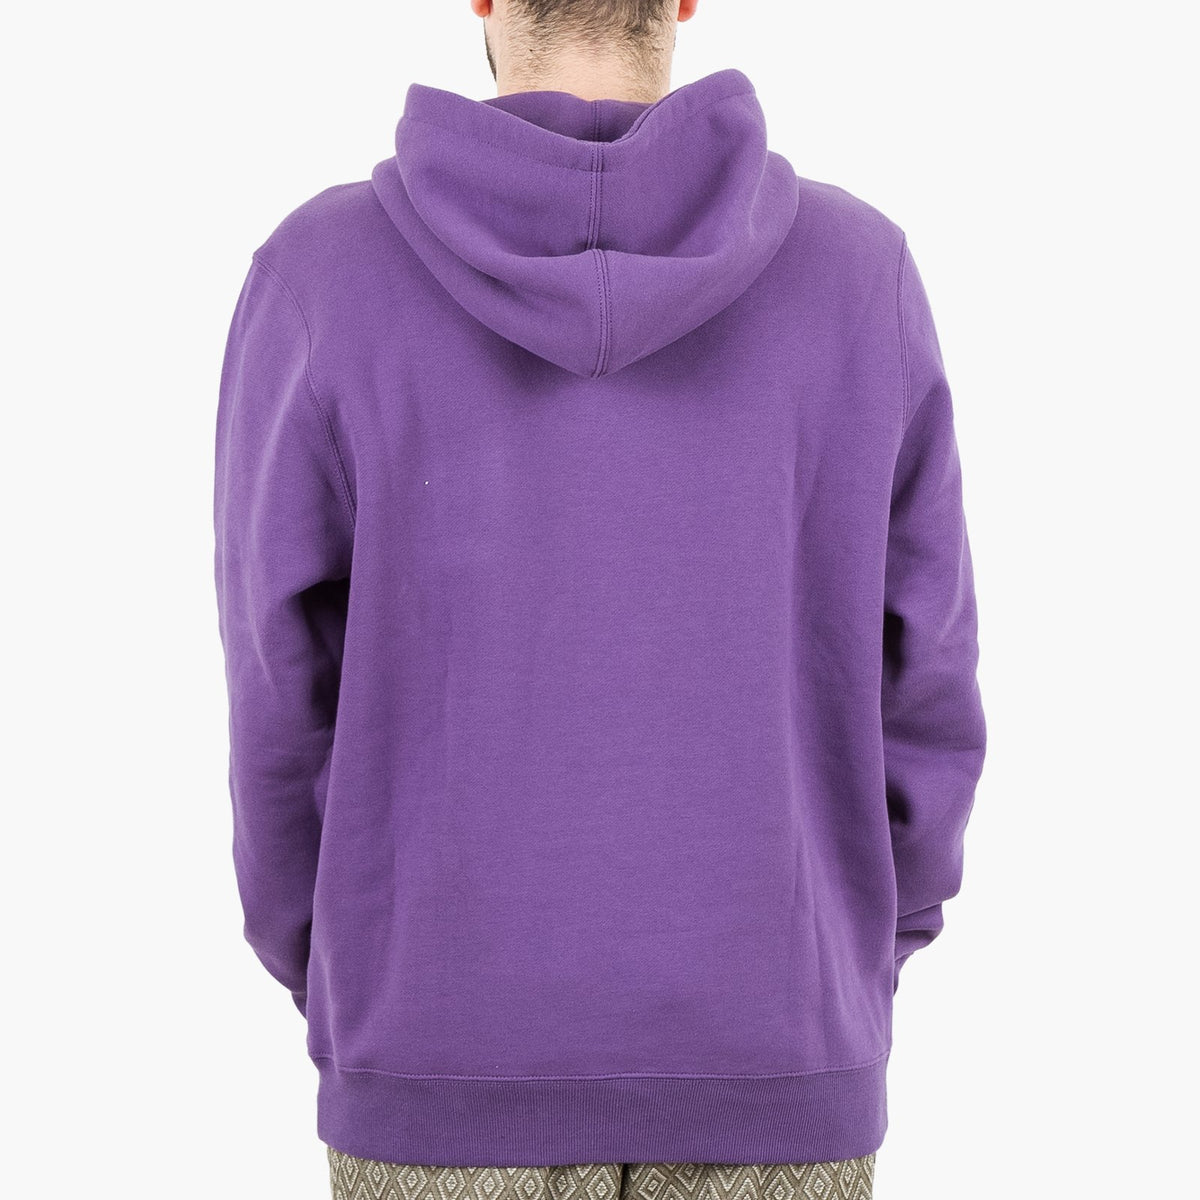 lavender vans hoodie